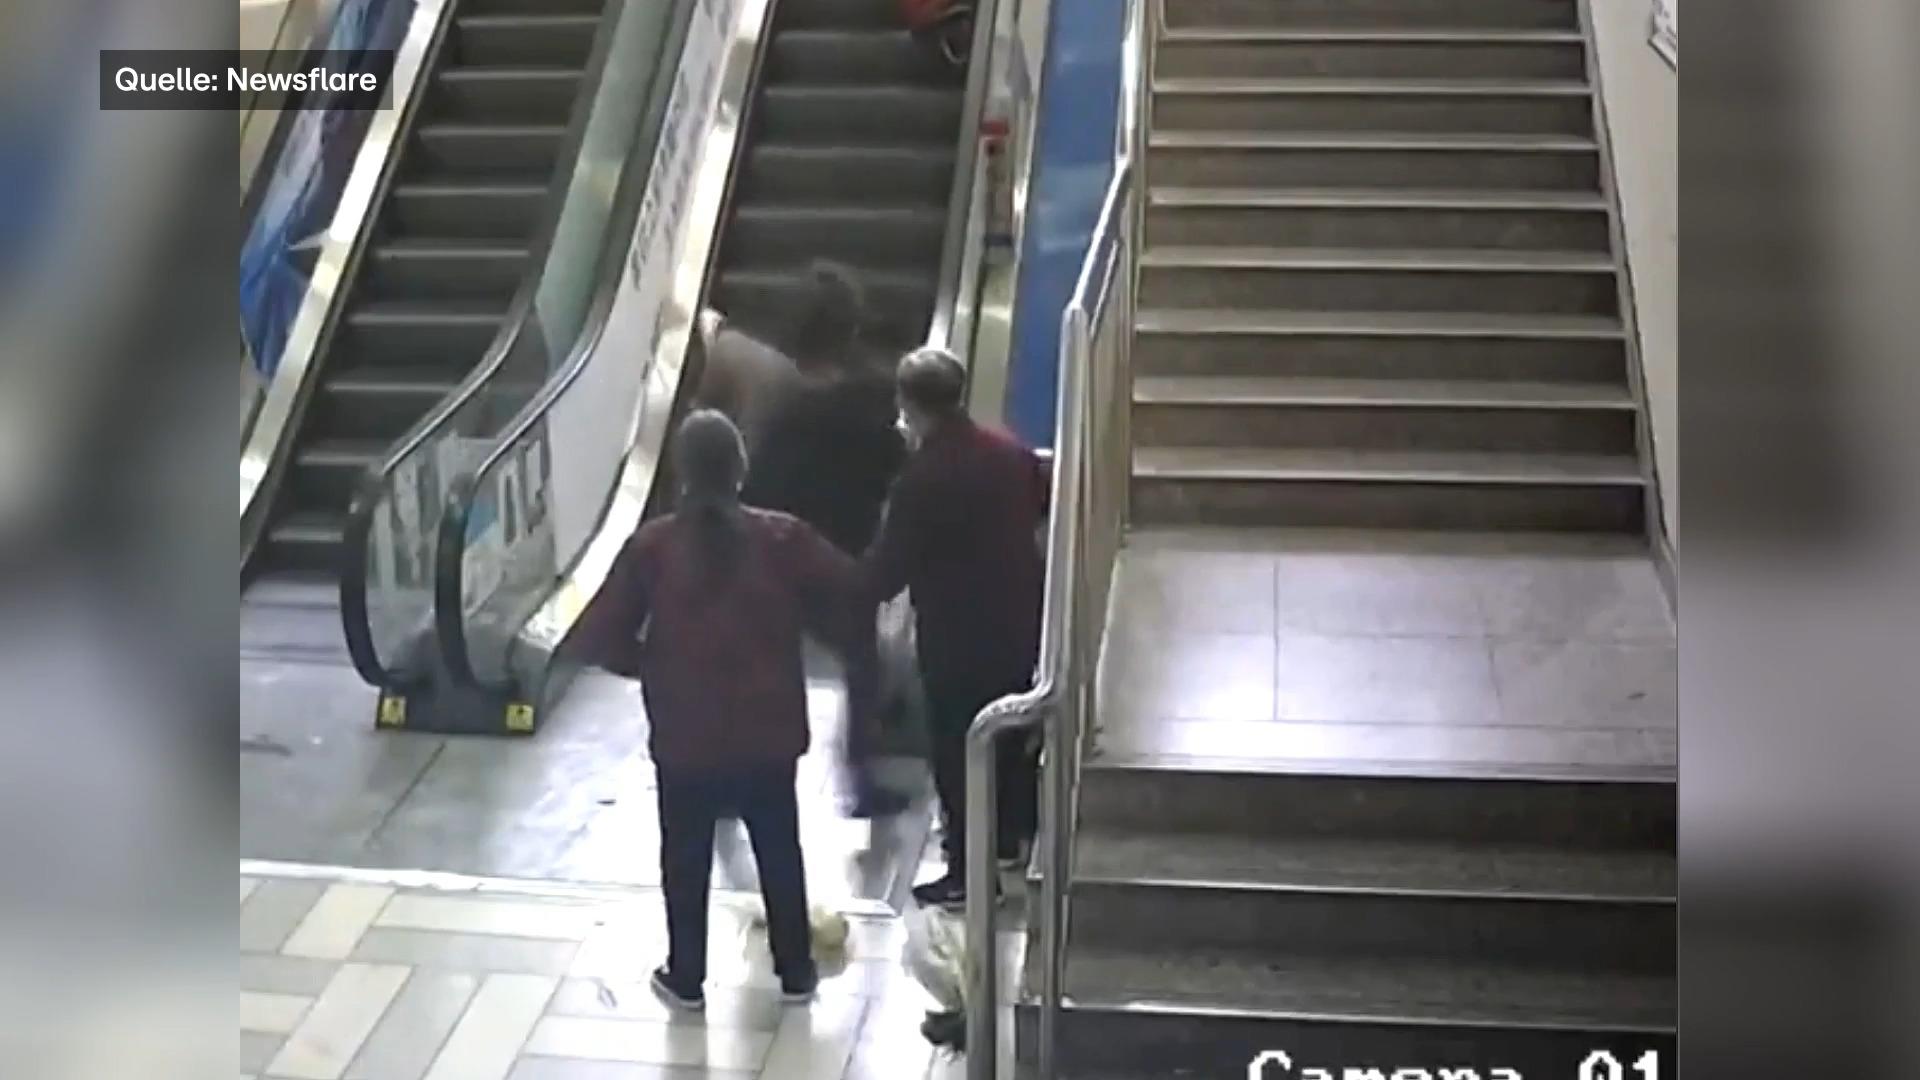 Frau stürzt auf Rolltreppe - Mann eilt zur Hilfe Schlimme Szene in China